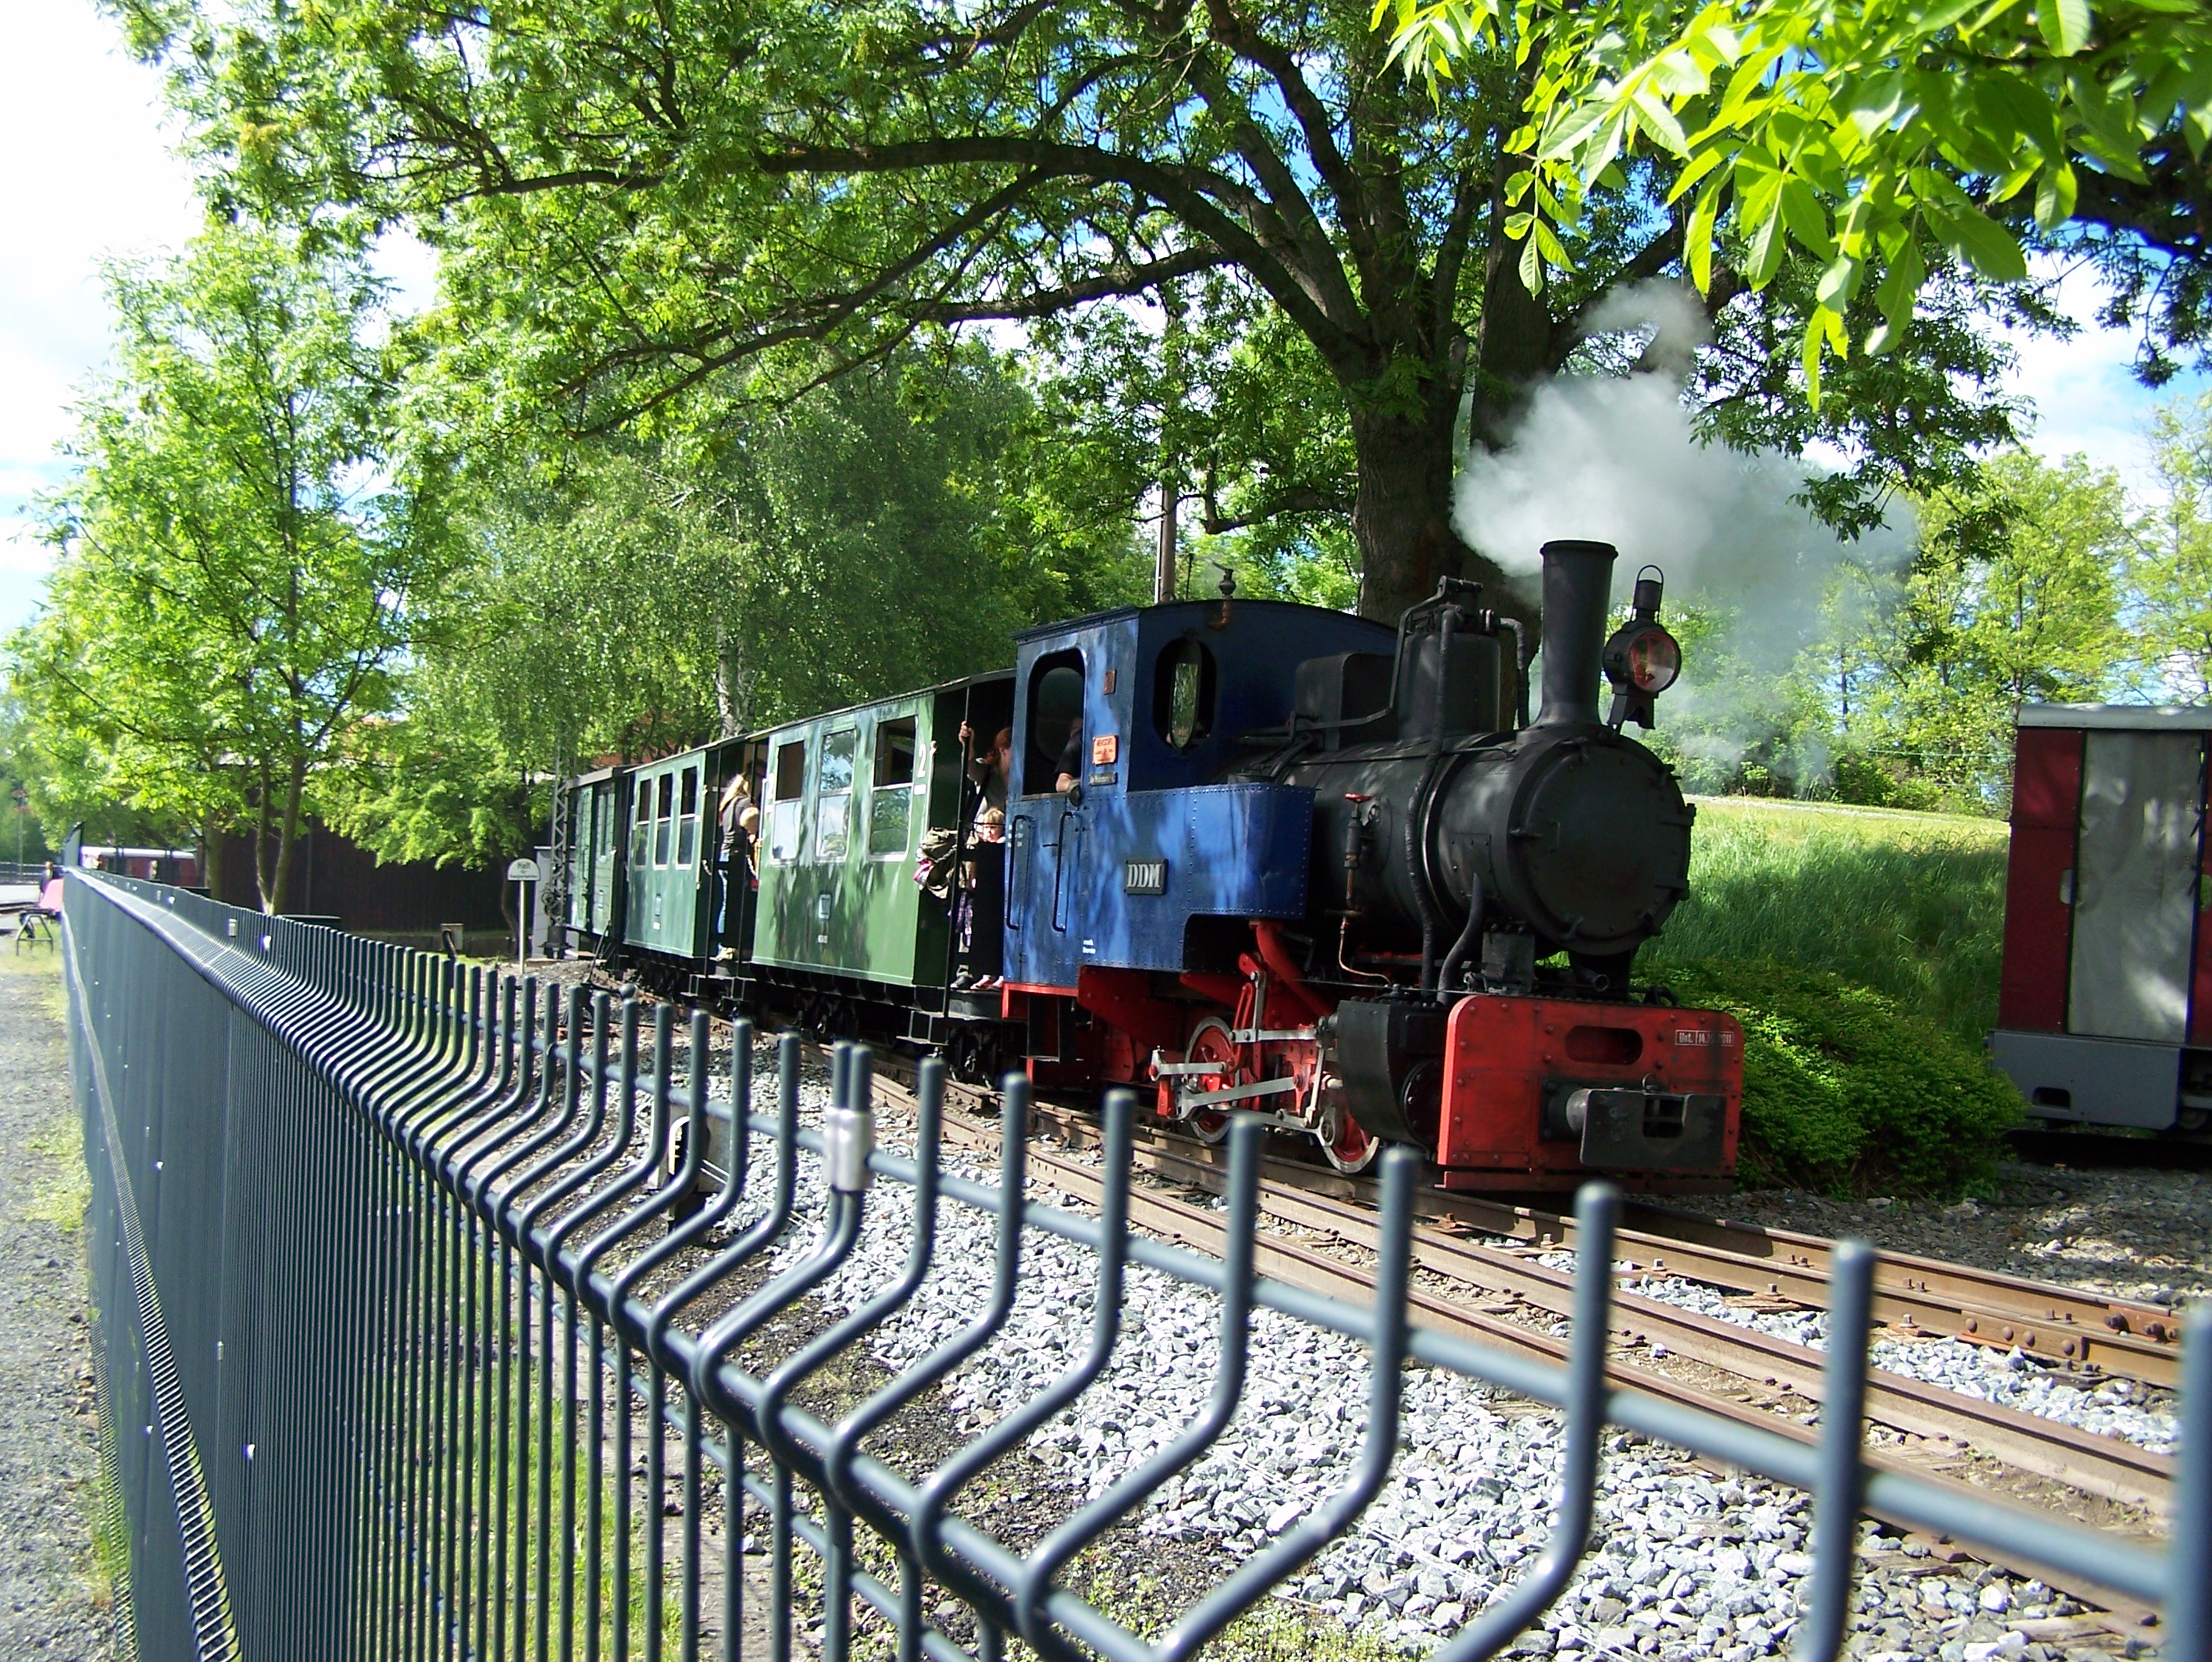 Die Bimmelbahn fährt ständig im Gelände des Museums. Eintritt 1€ pro Nase